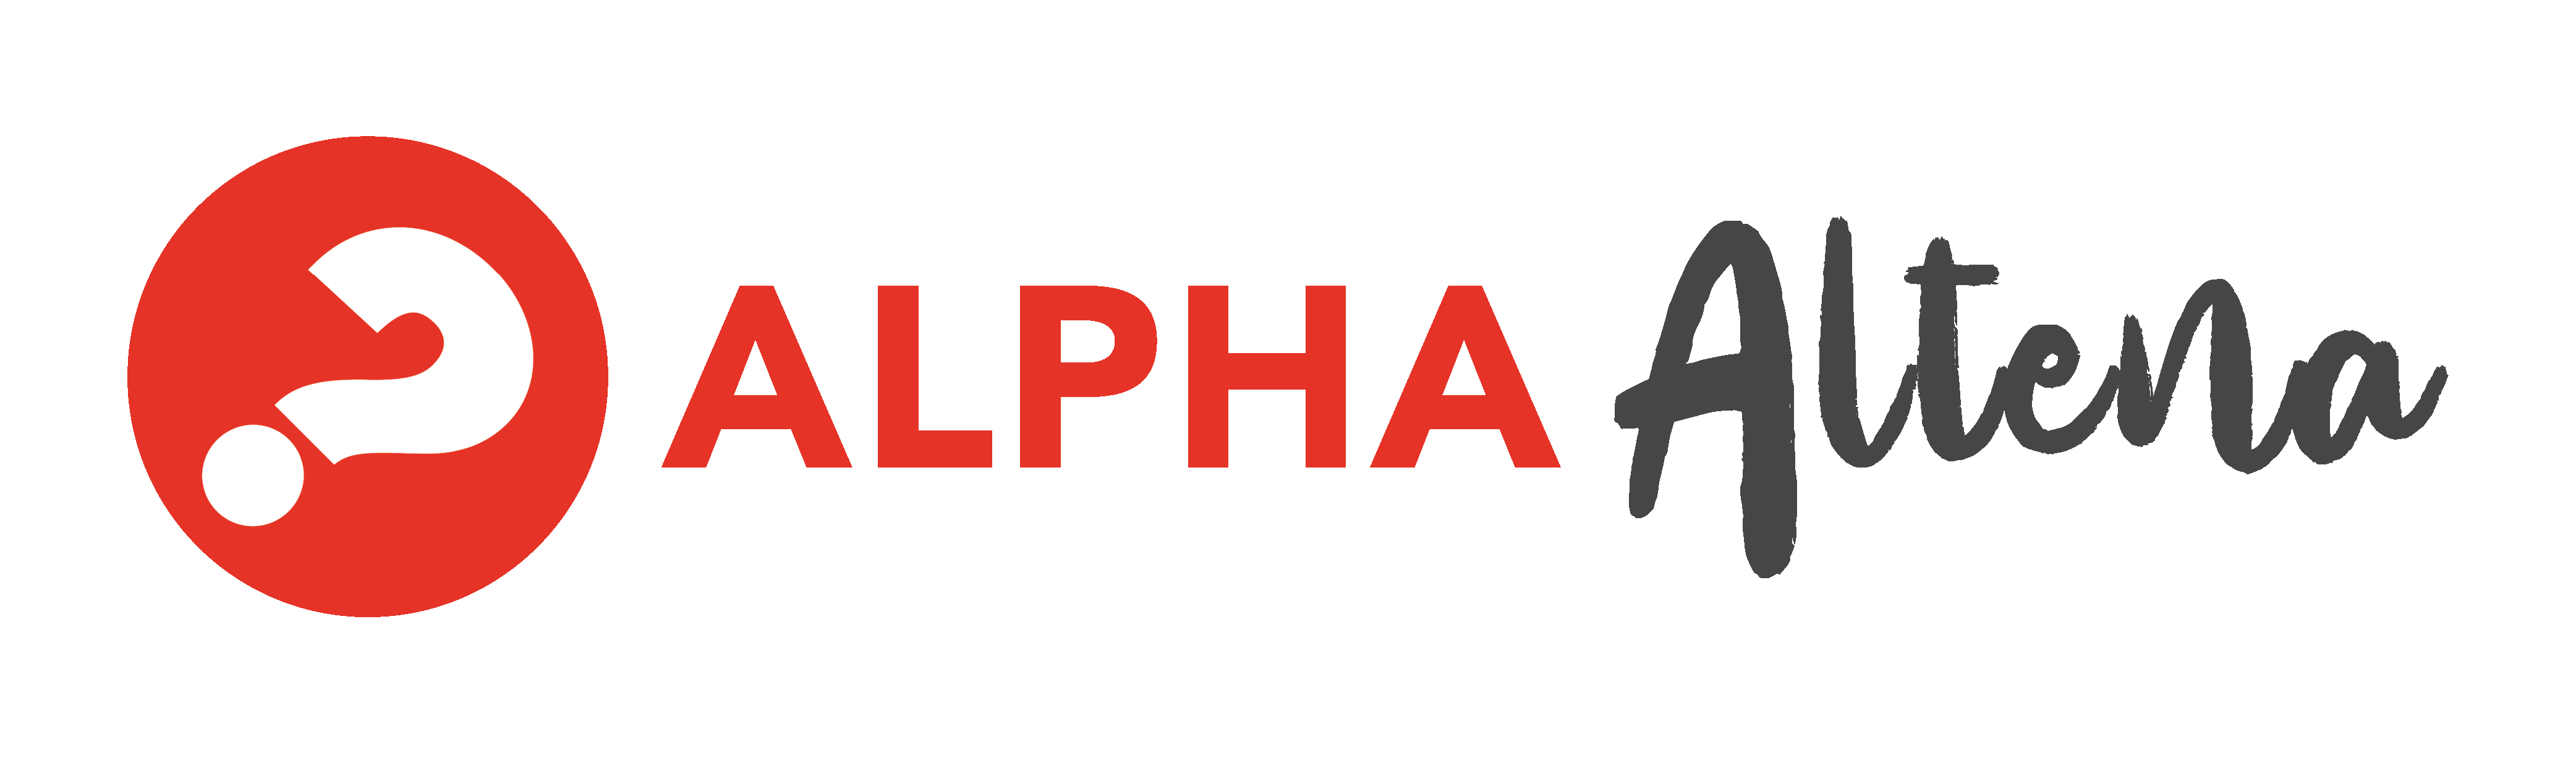 LogoAlphaAltena trans